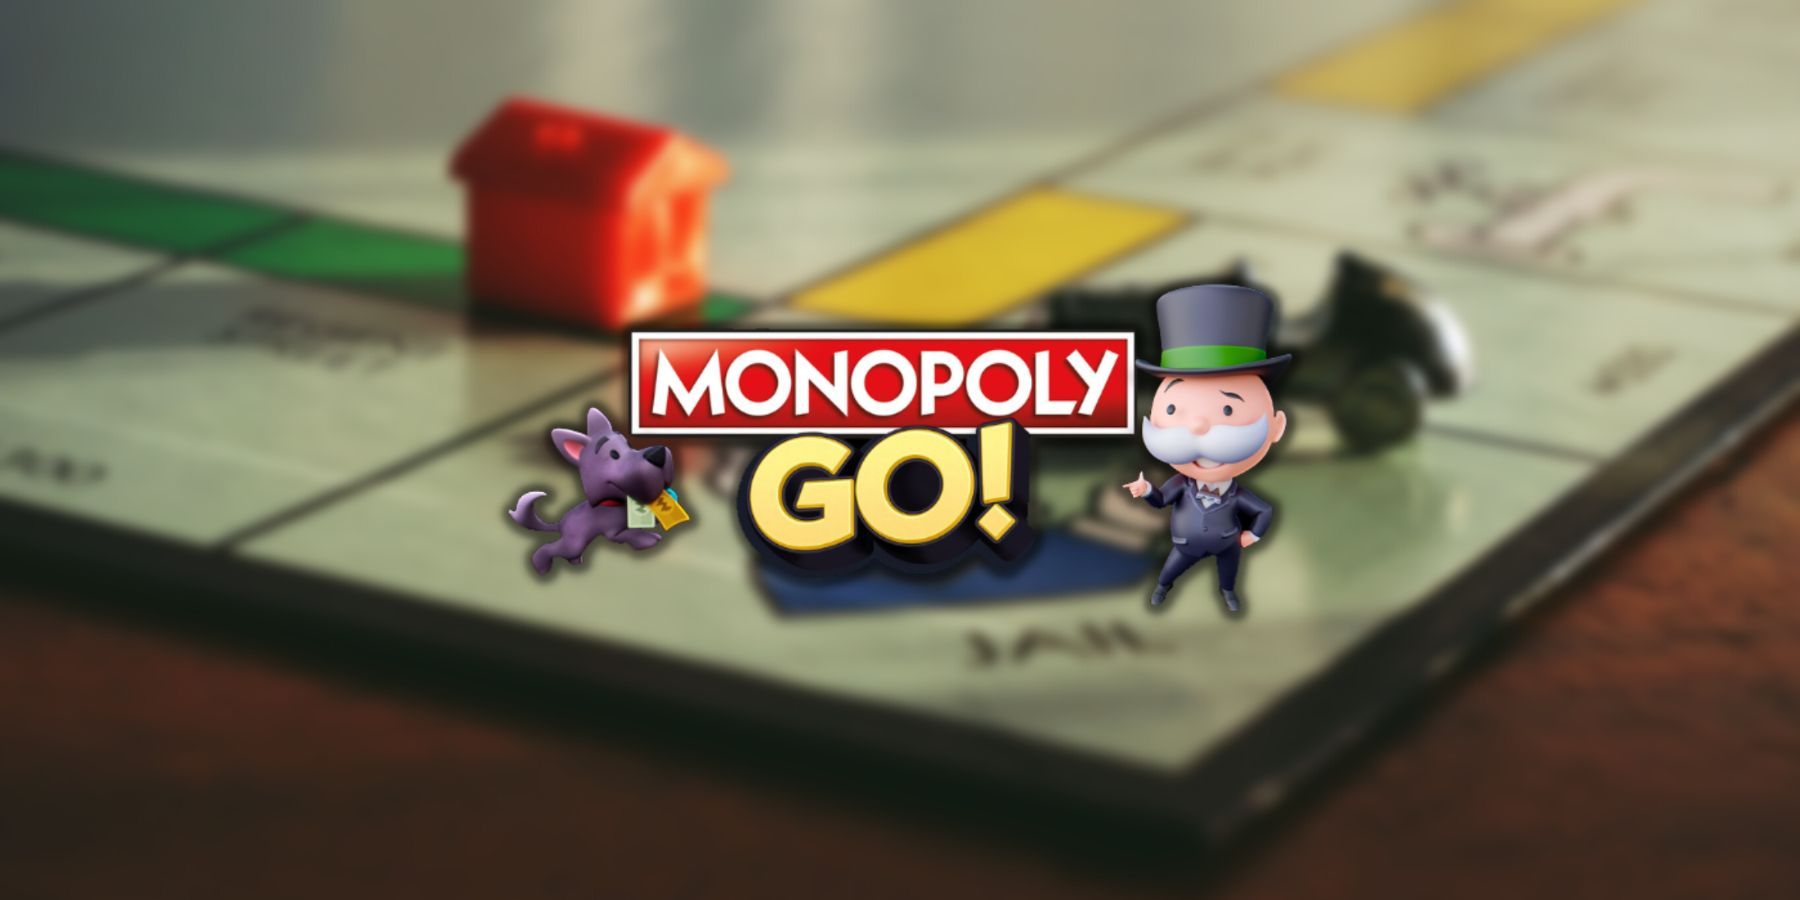 Monopoly Go: Расписание событий по поиску сокровищ